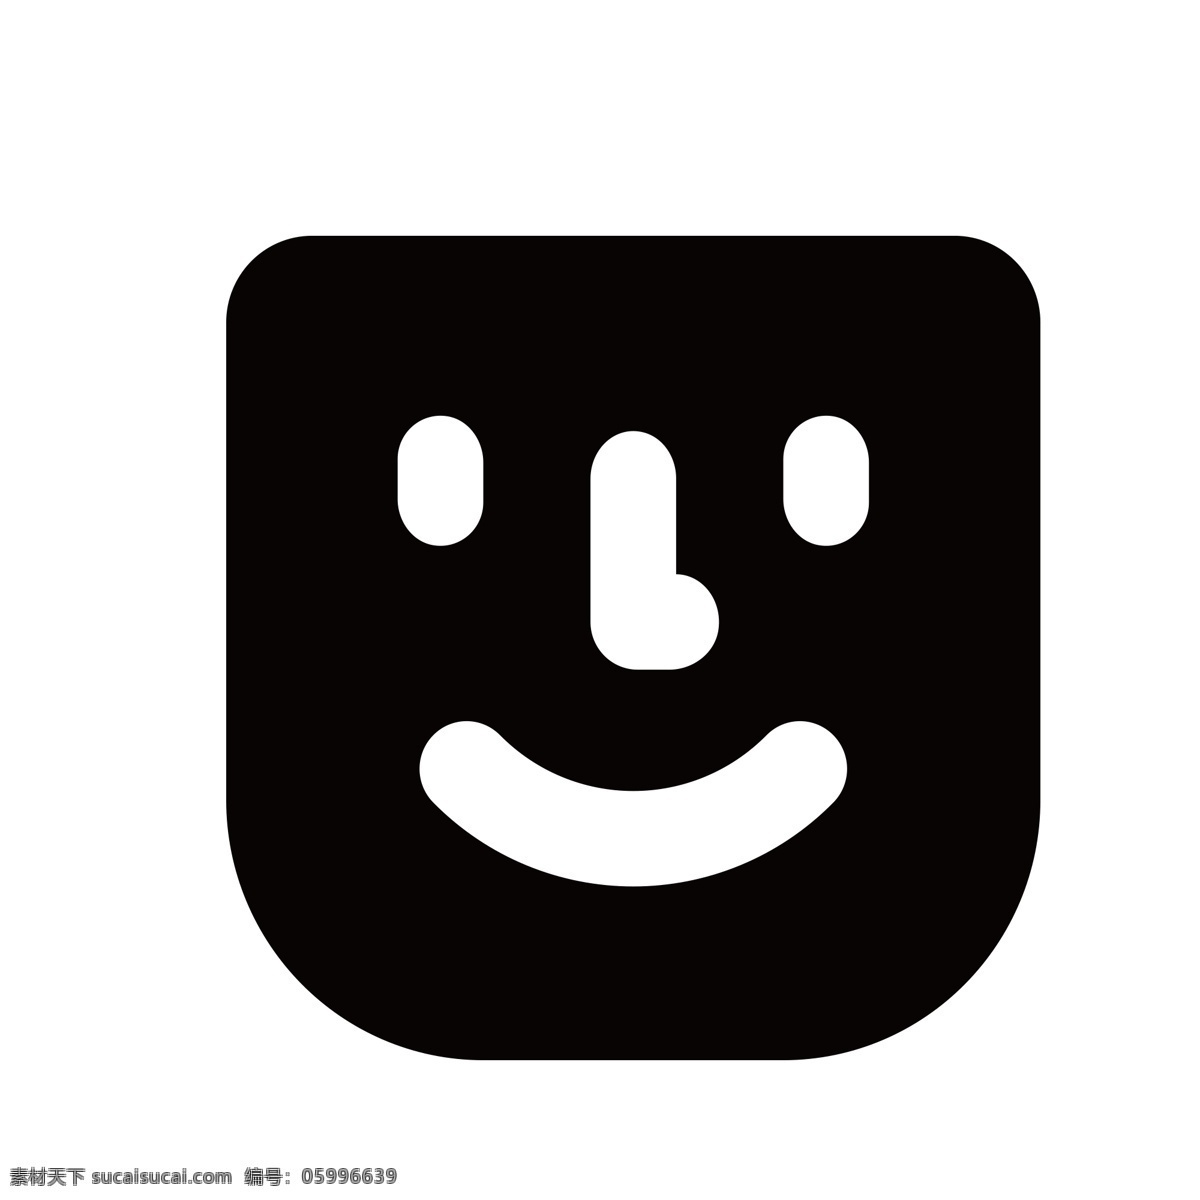 扁平化笑脸 主题商店 扁平化ui ui图标 手机图标 界面ui 网页ui h5图标